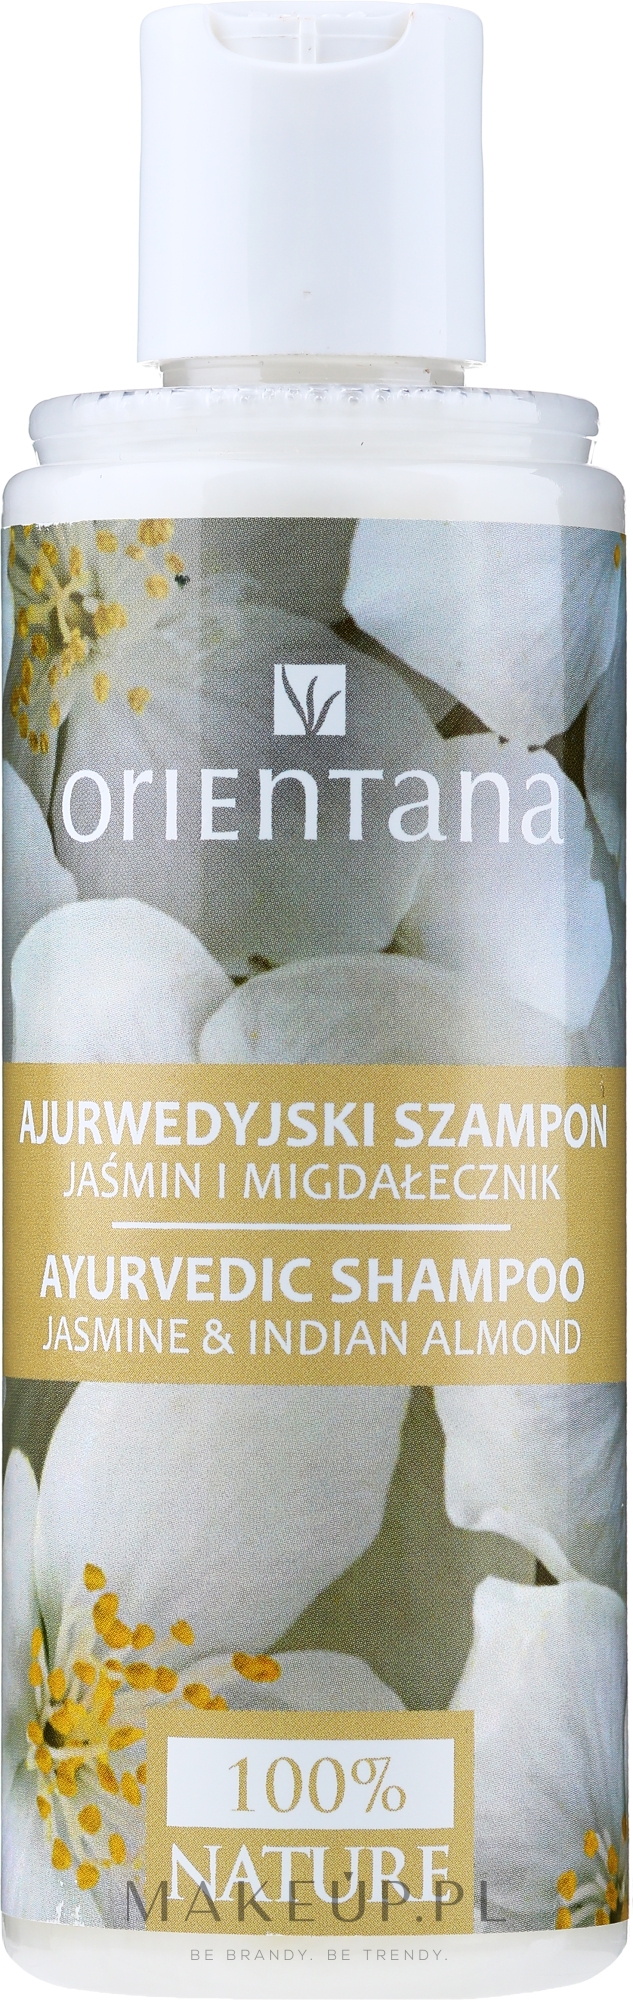 orientana szampon ajurwedyjski